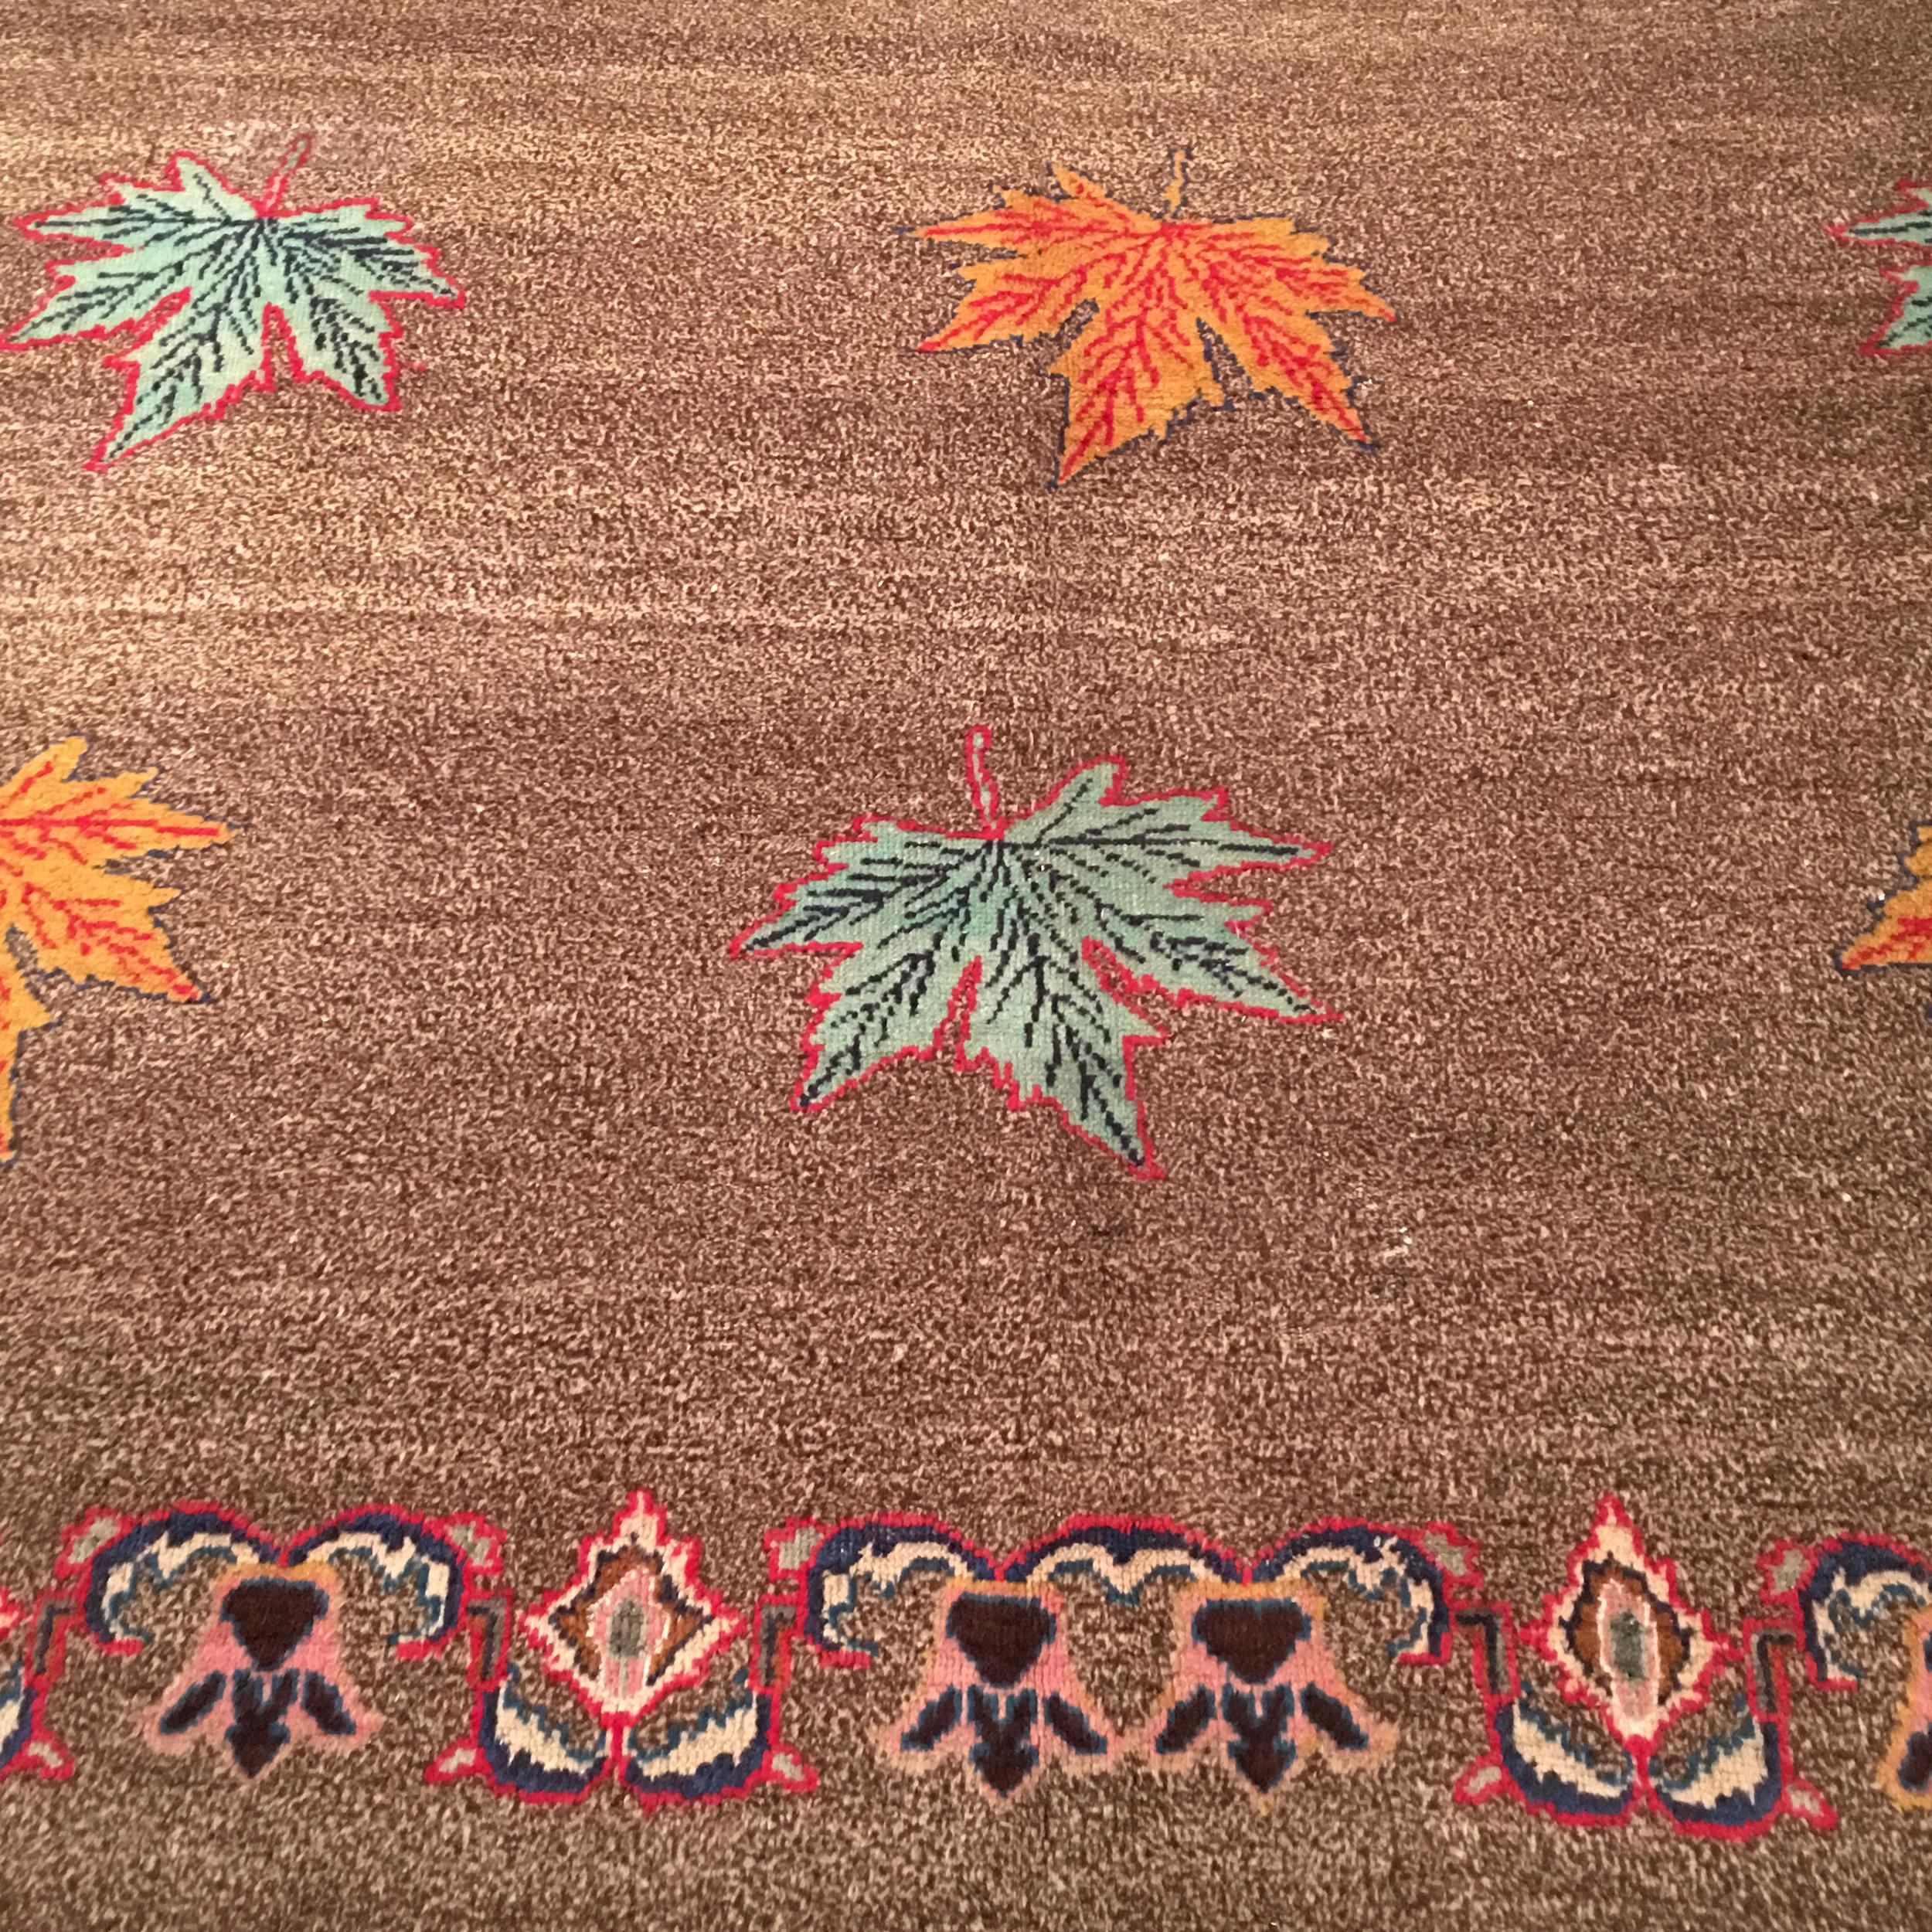 Ein höchst ungewöhnlicher indischer Art-Déco-Teppich, der sich durch ein Allover-Muster aus großen polychromen Ahornblättern auszeichnet, die sorgfältig auf einem salz- und pfefferbraunen und elfenbeinfarbenen Hintergrund platziert sind, umrahmt von